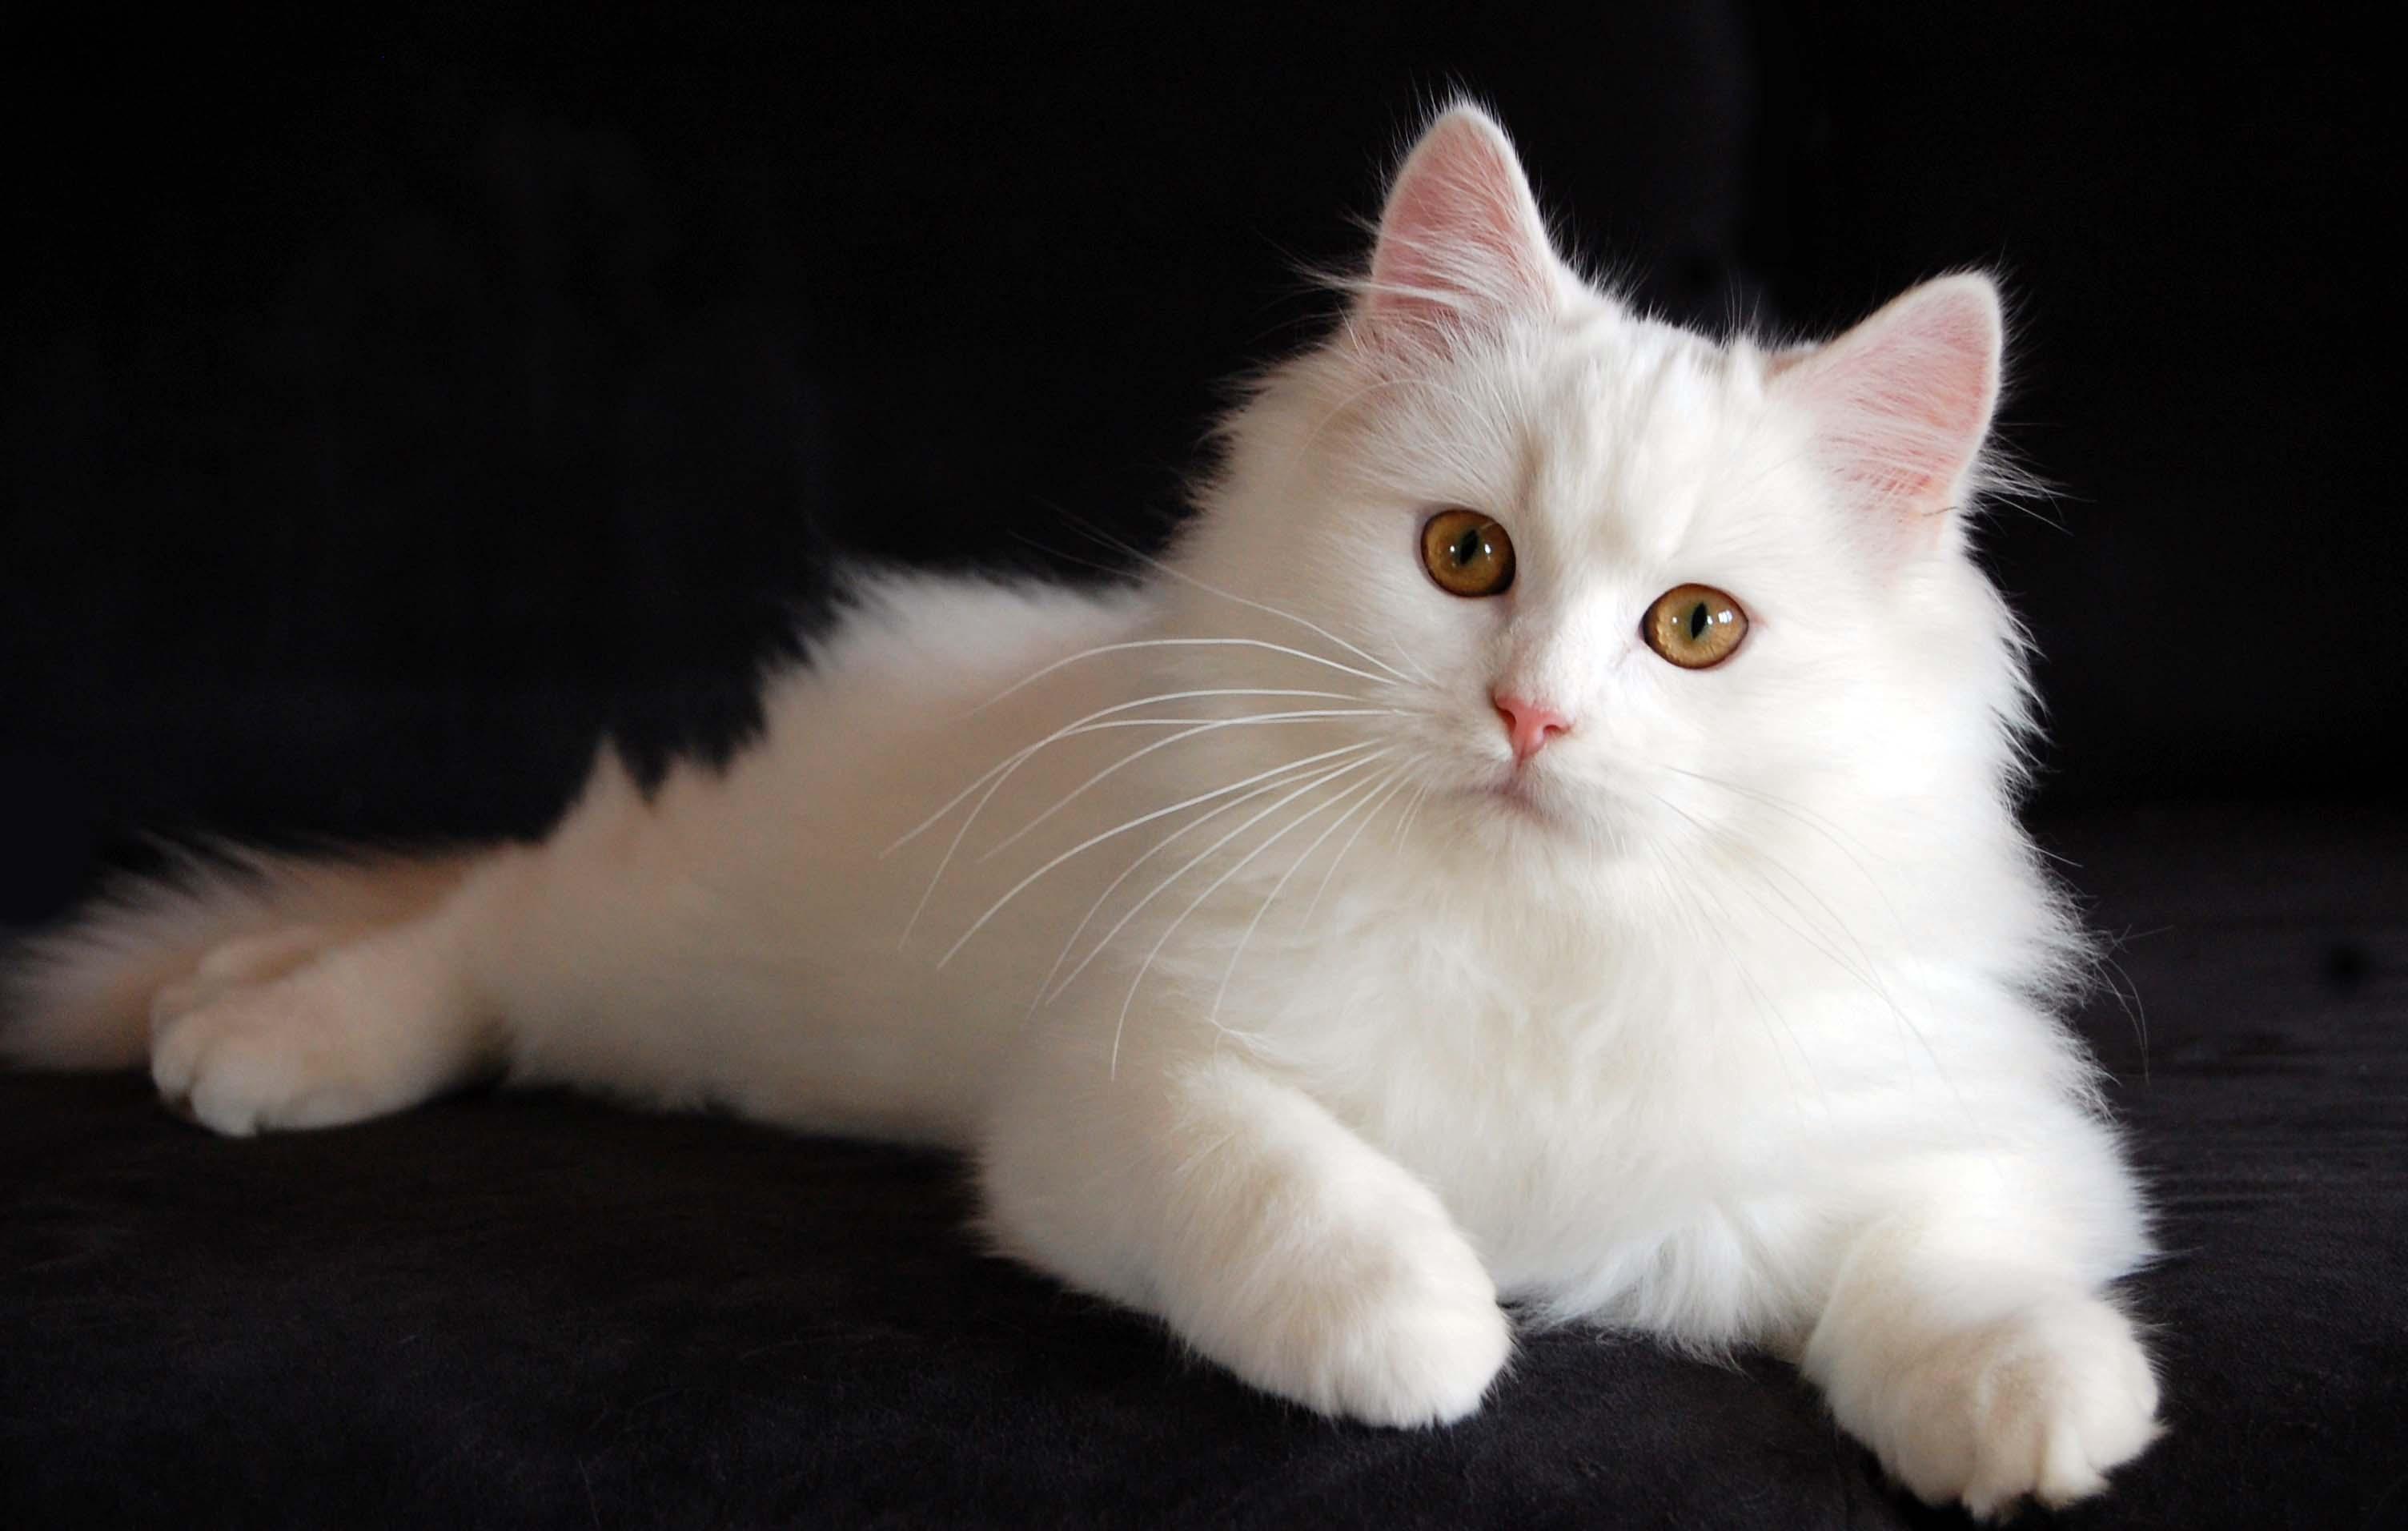 临清狮子猫的被毛颜色以白色居多,而且白色是比较珍